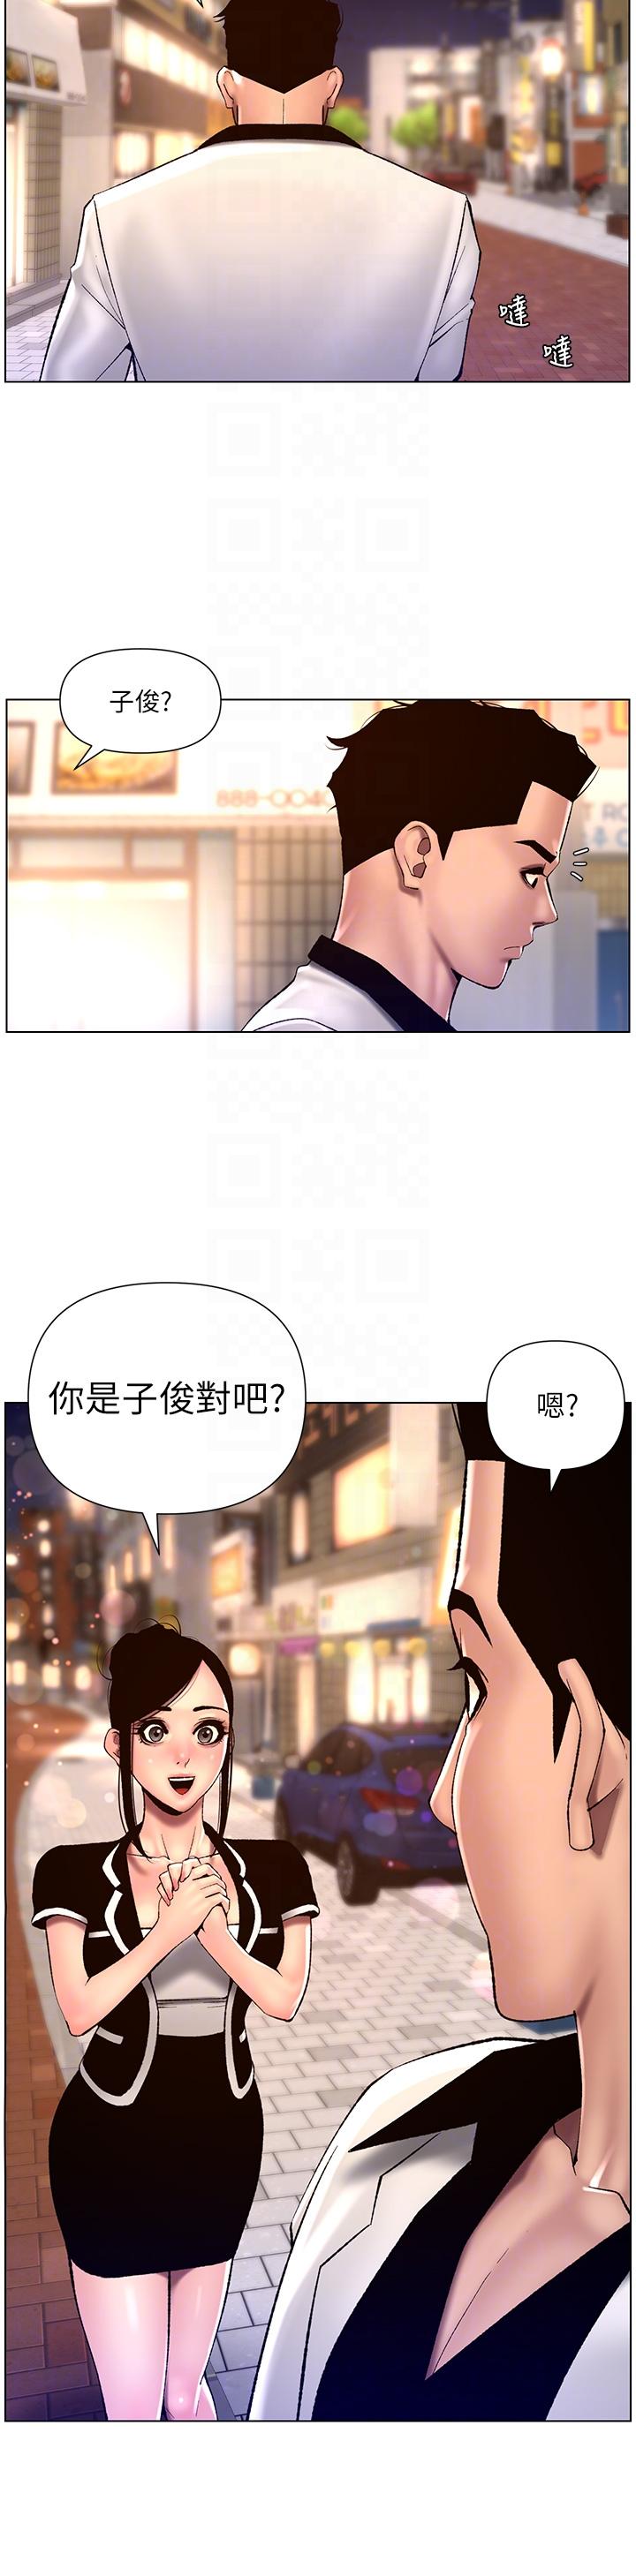 韩国污漫画 帝王App 第83话-久违的平凡性爱 18